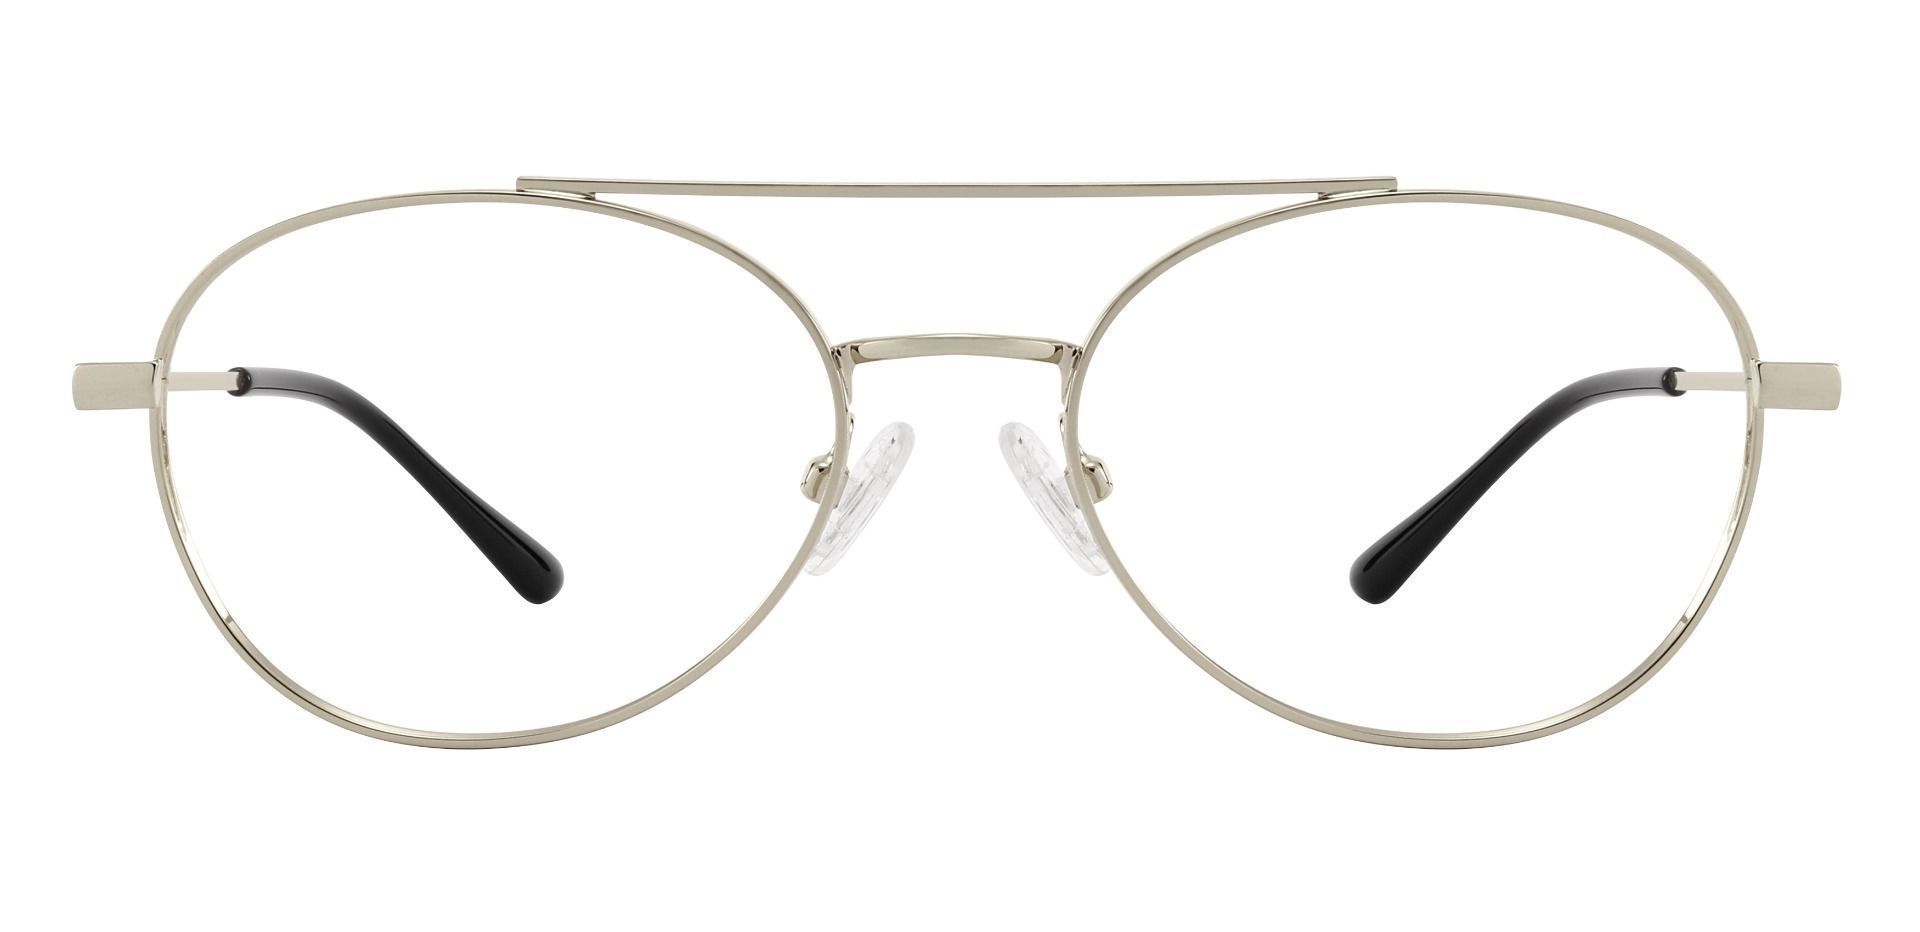 Hinton Aviator Progressive Glasses - Silver